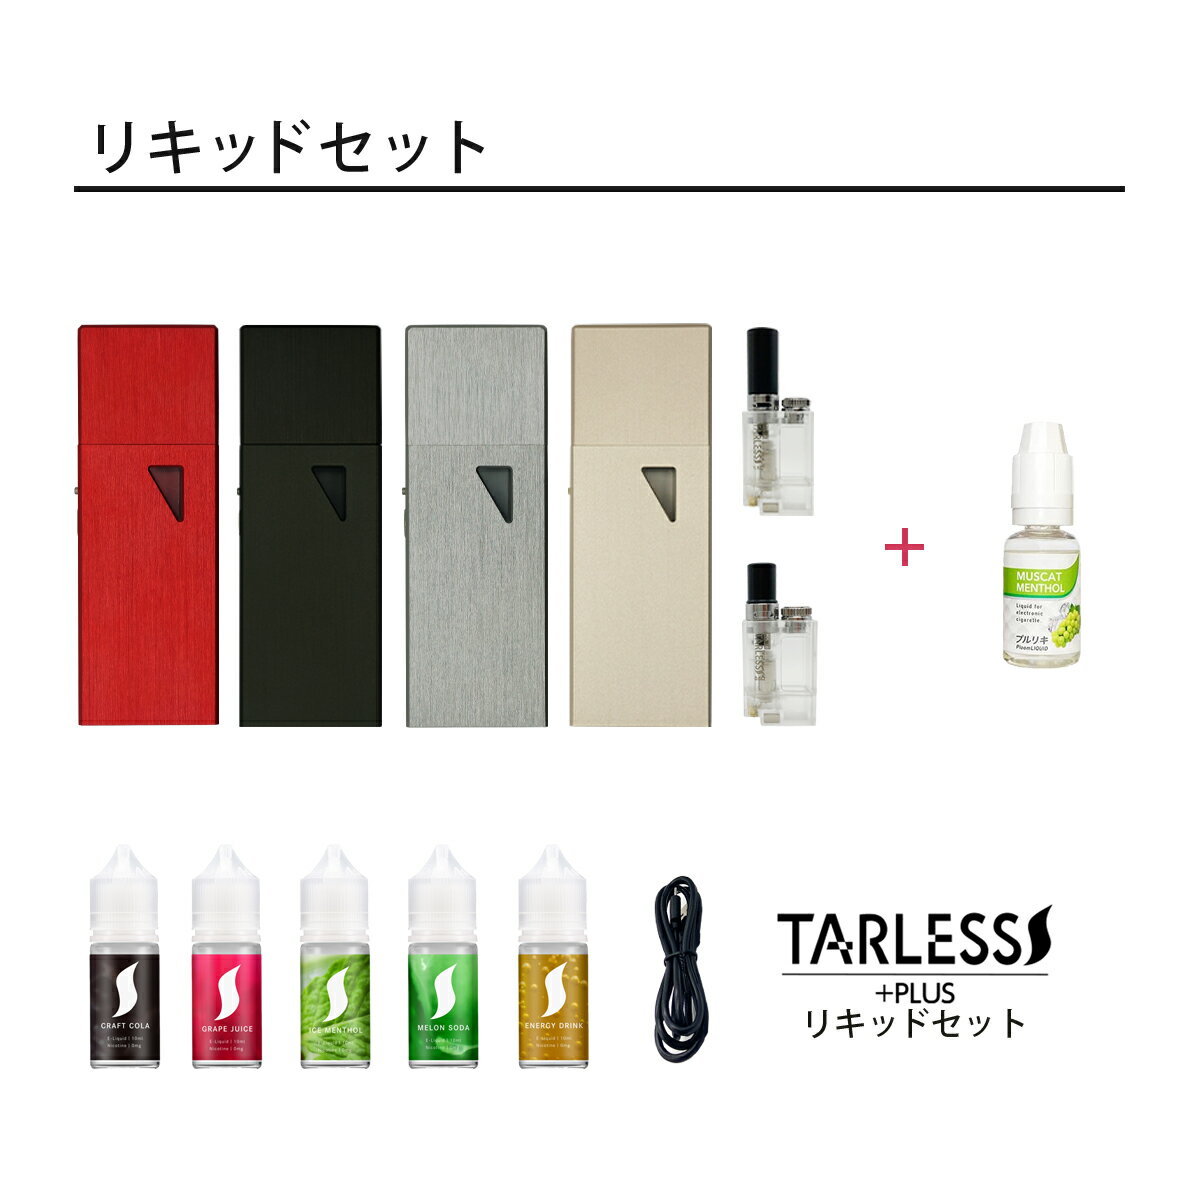 TARLESS PLUS ターレスプラス ターレスリキッドセット ベプログ たばこカプセル対応 電子タバコ タール 禁煙 節煙 たばこカプセル EASY VAPE